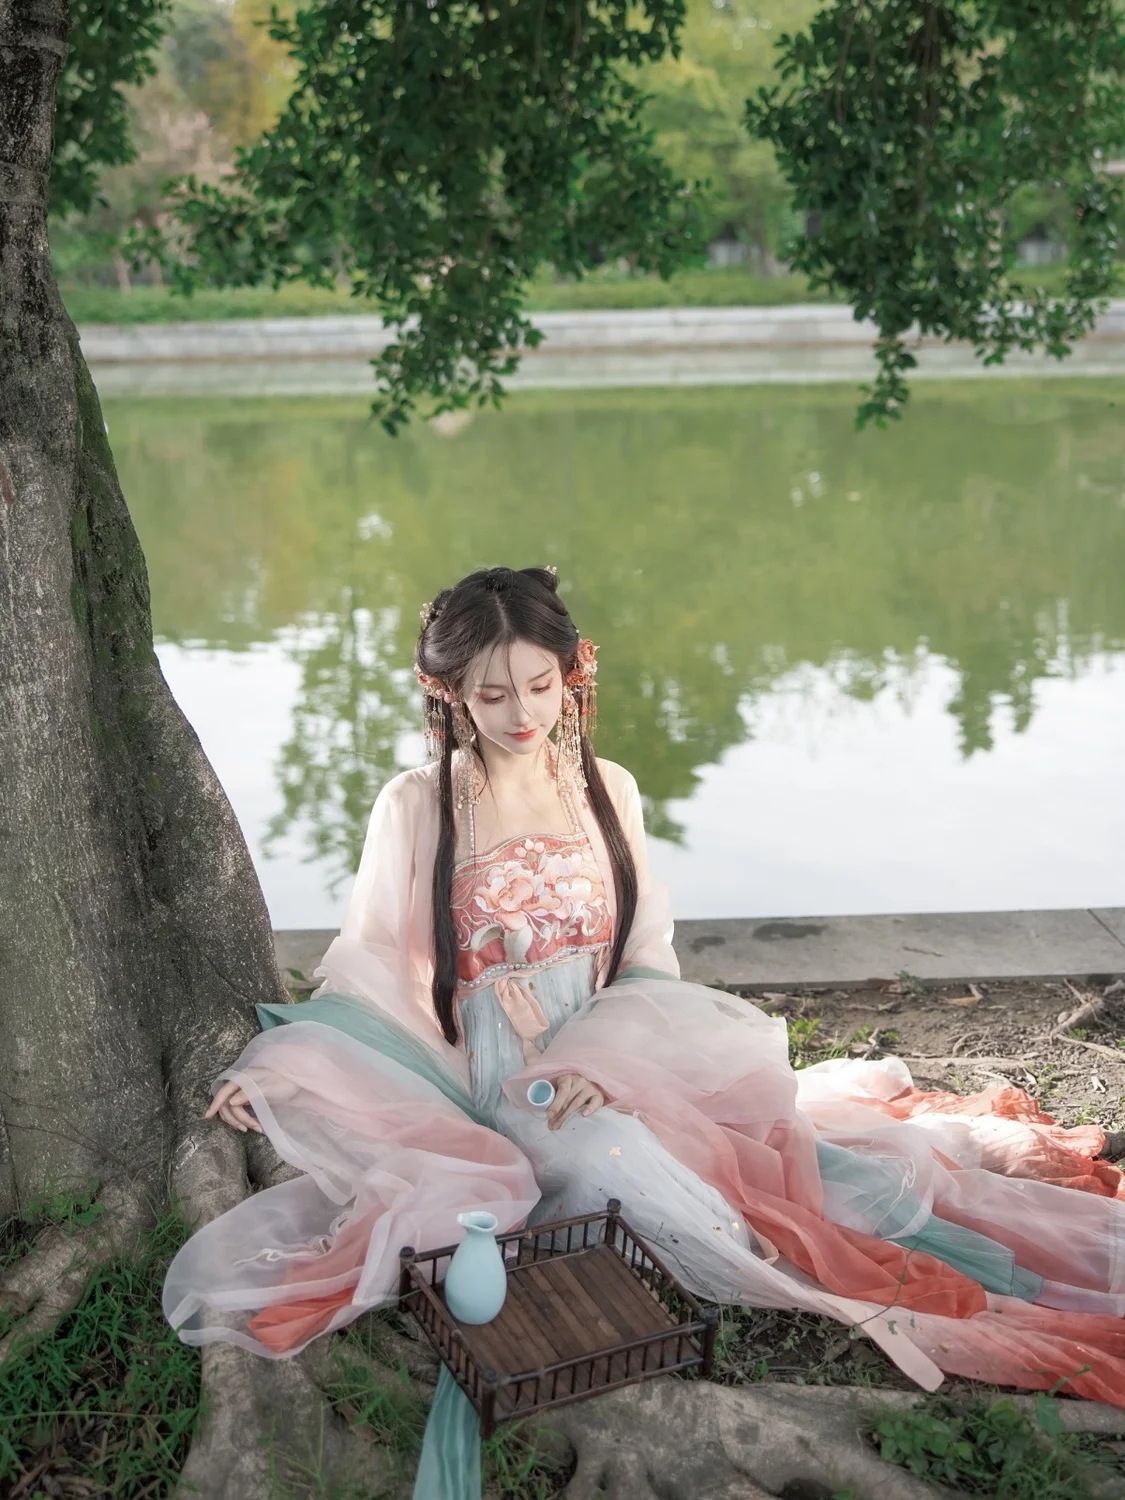 אסתטי הפייה המקורי Hanfu הנשי החזה-אורך האן אלמנטים טאנג סגנון גדול שרוול החולצה רקמה Khov חליפת חצאית - 2